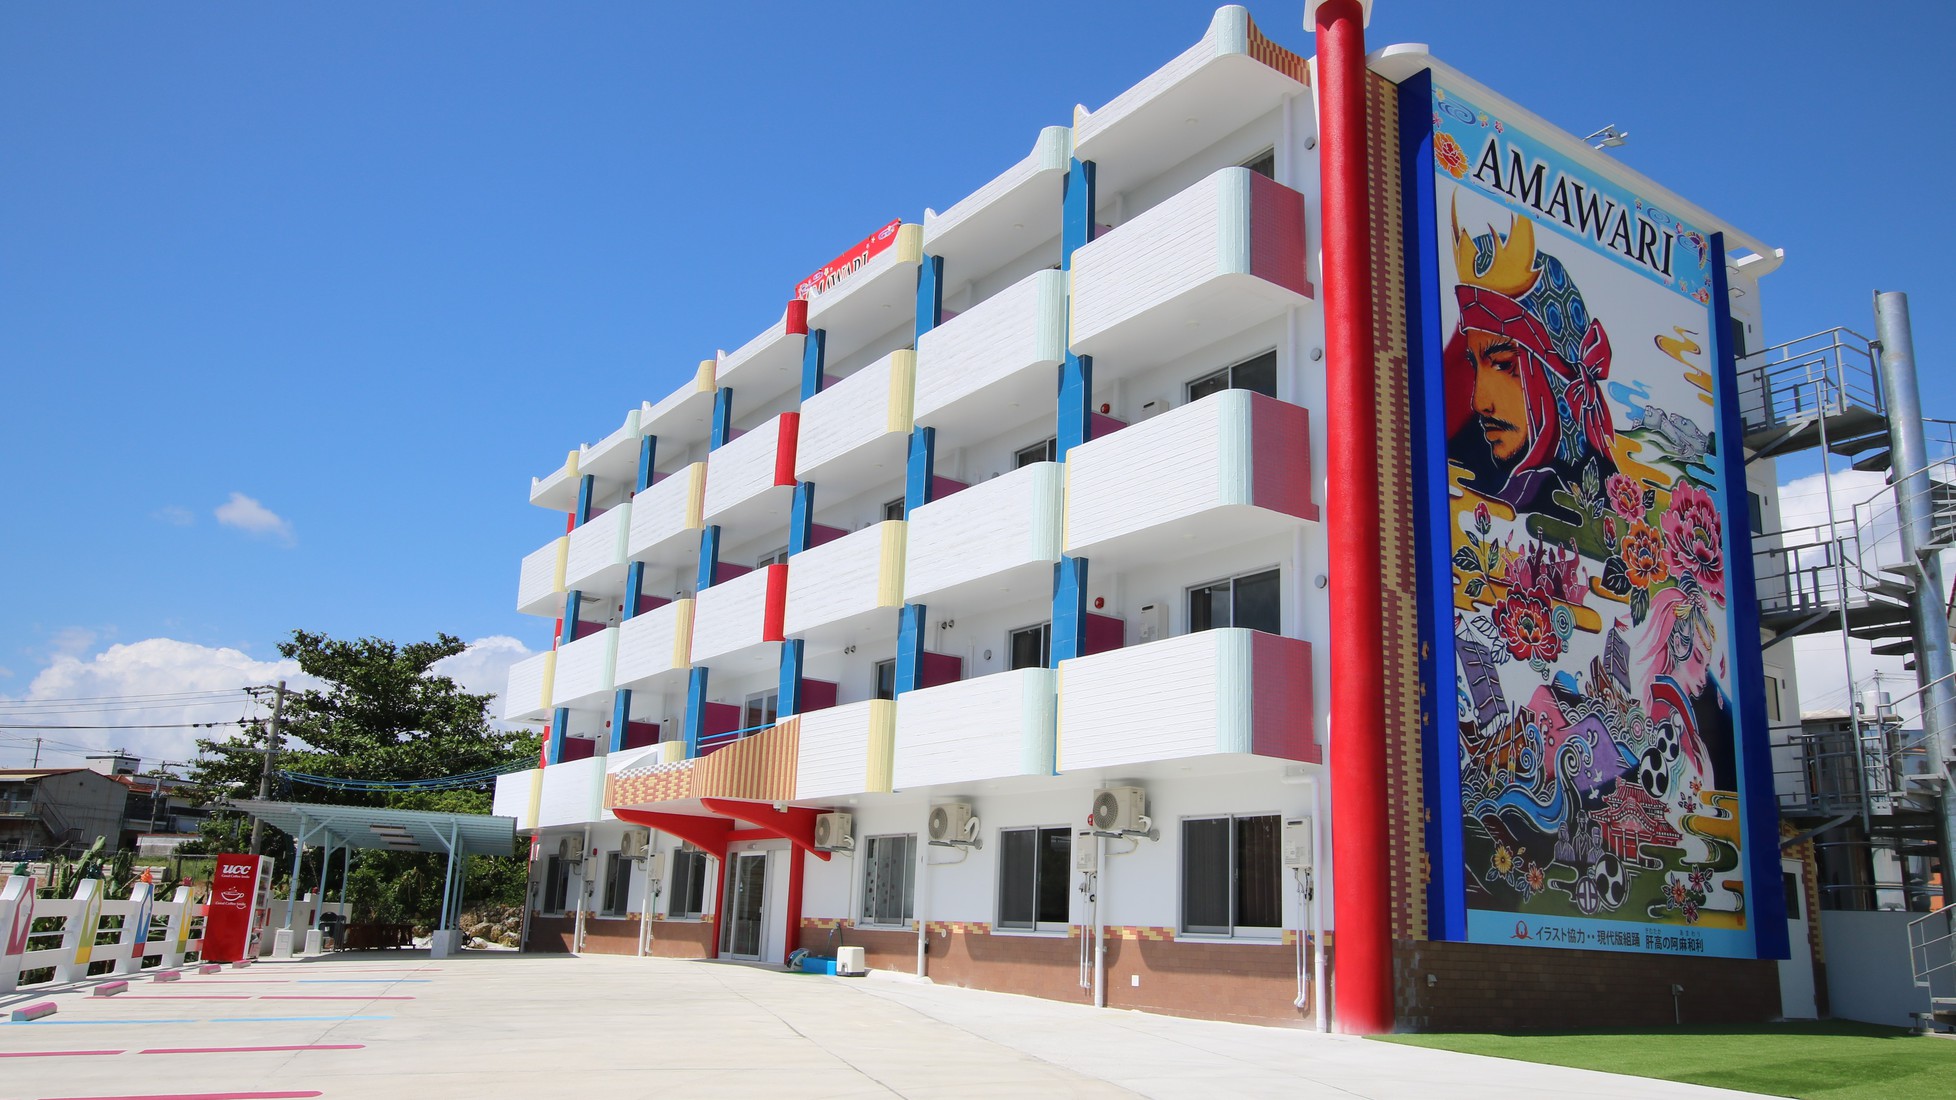 【WEB割】沖縄観光の拠点！うるま市の築浅ホテル 「肝高の阿麻和利」のイラストがお出迎え(素泊まり)